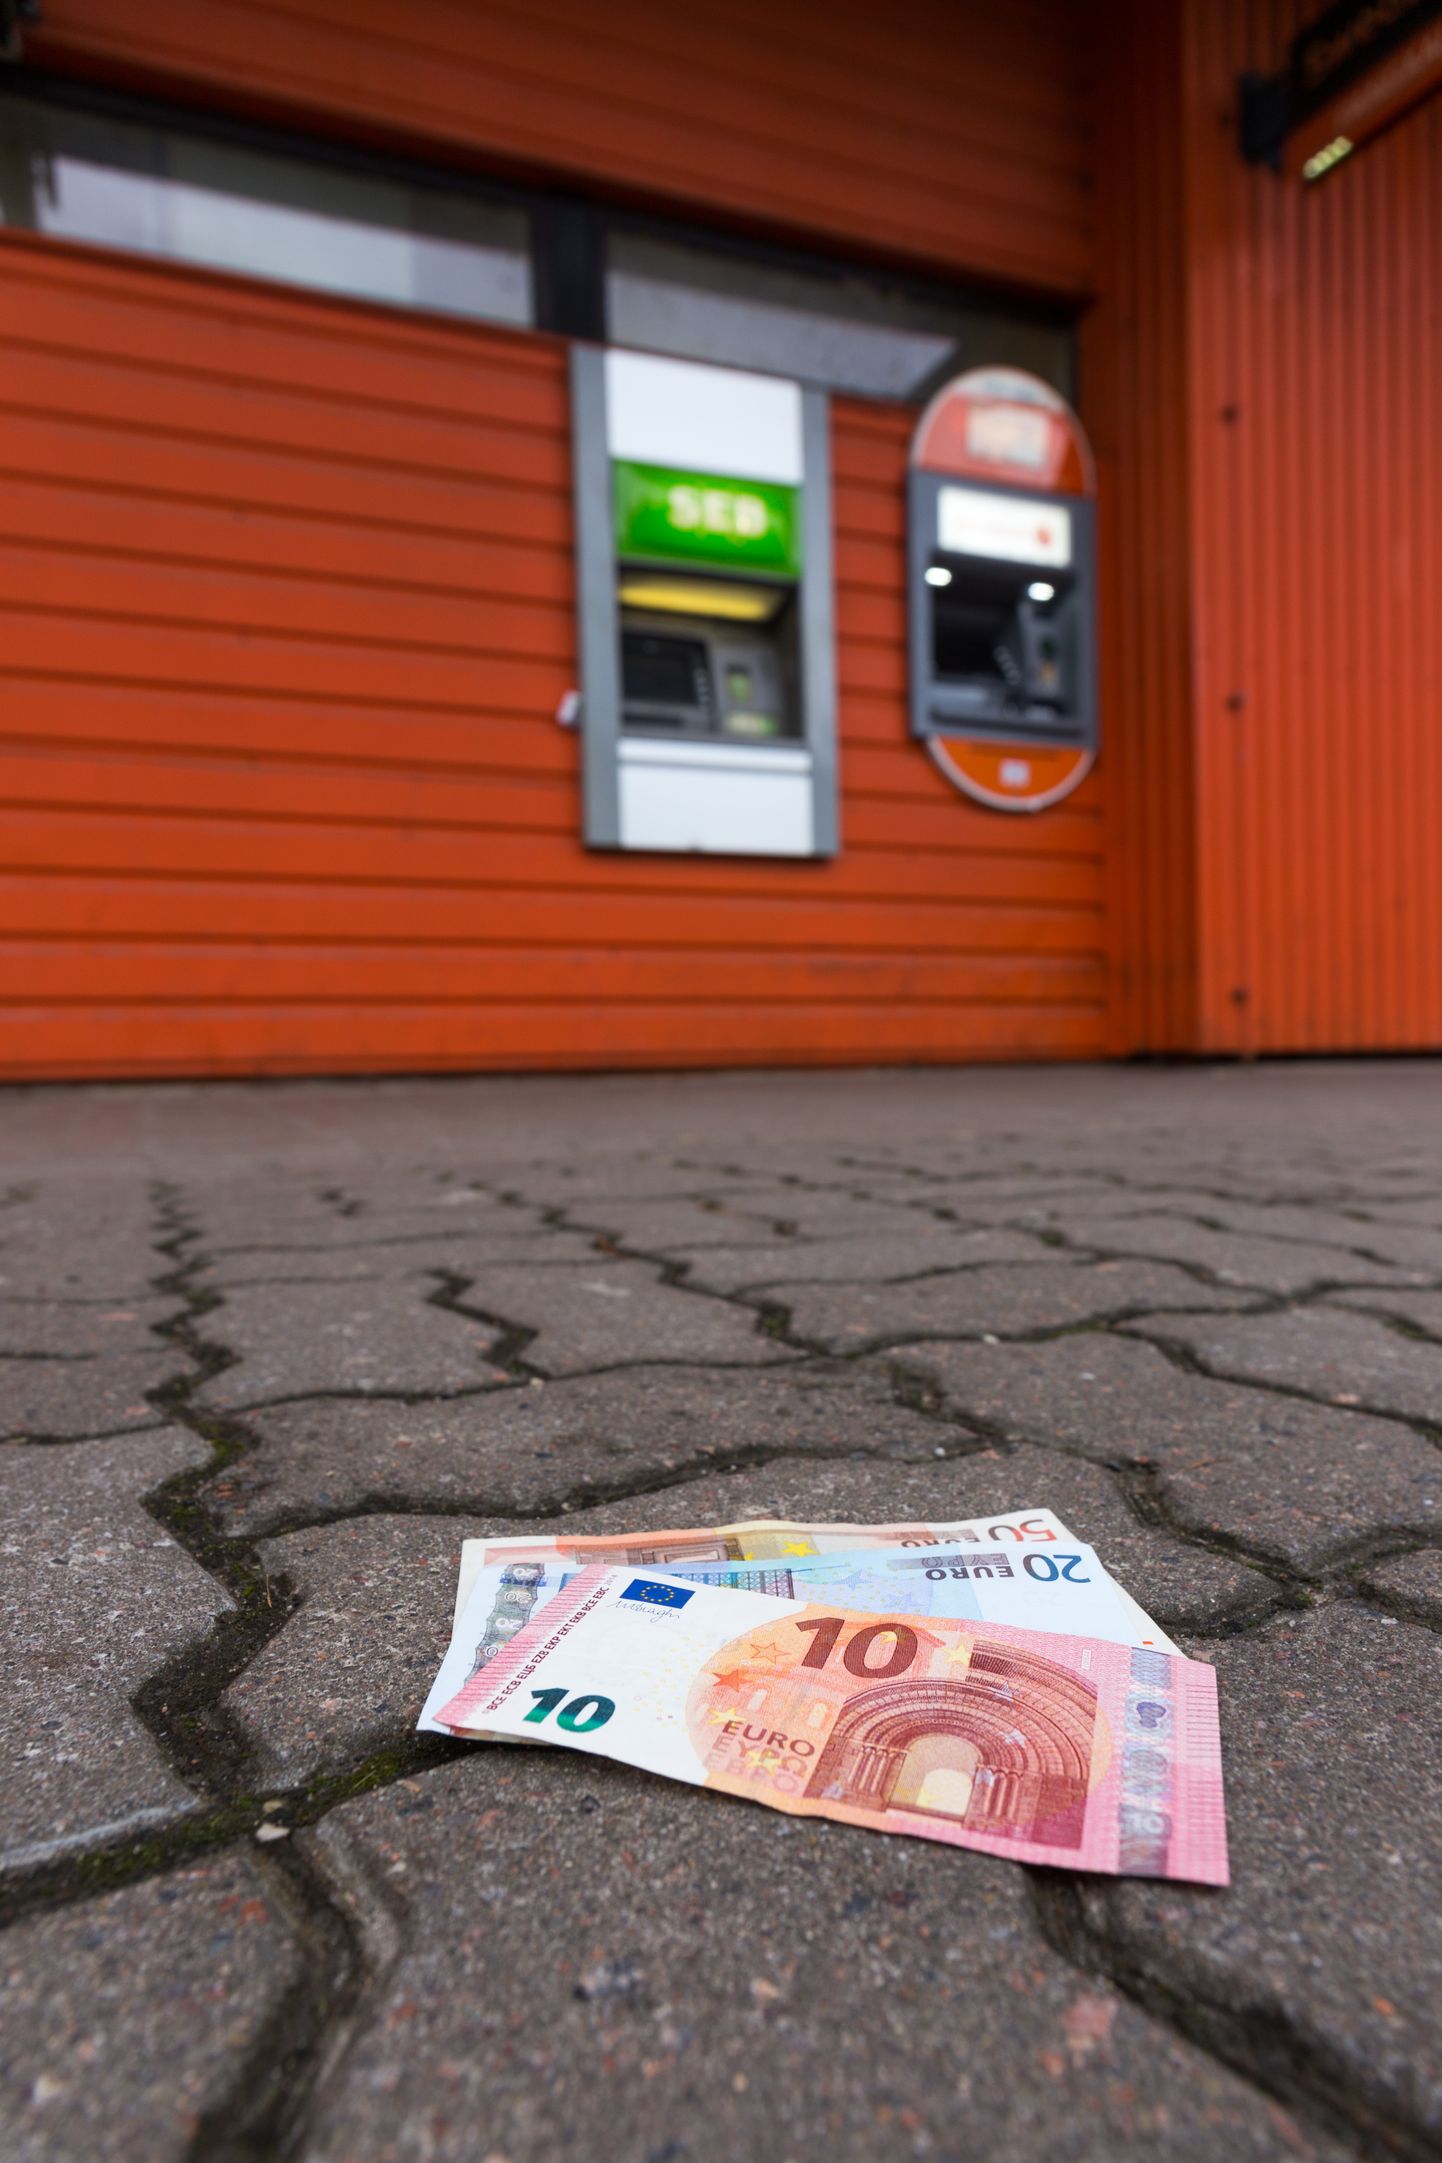 5100 eurot võttis naine välja panga sularahaautomaadist. Foto on illustratiivne.